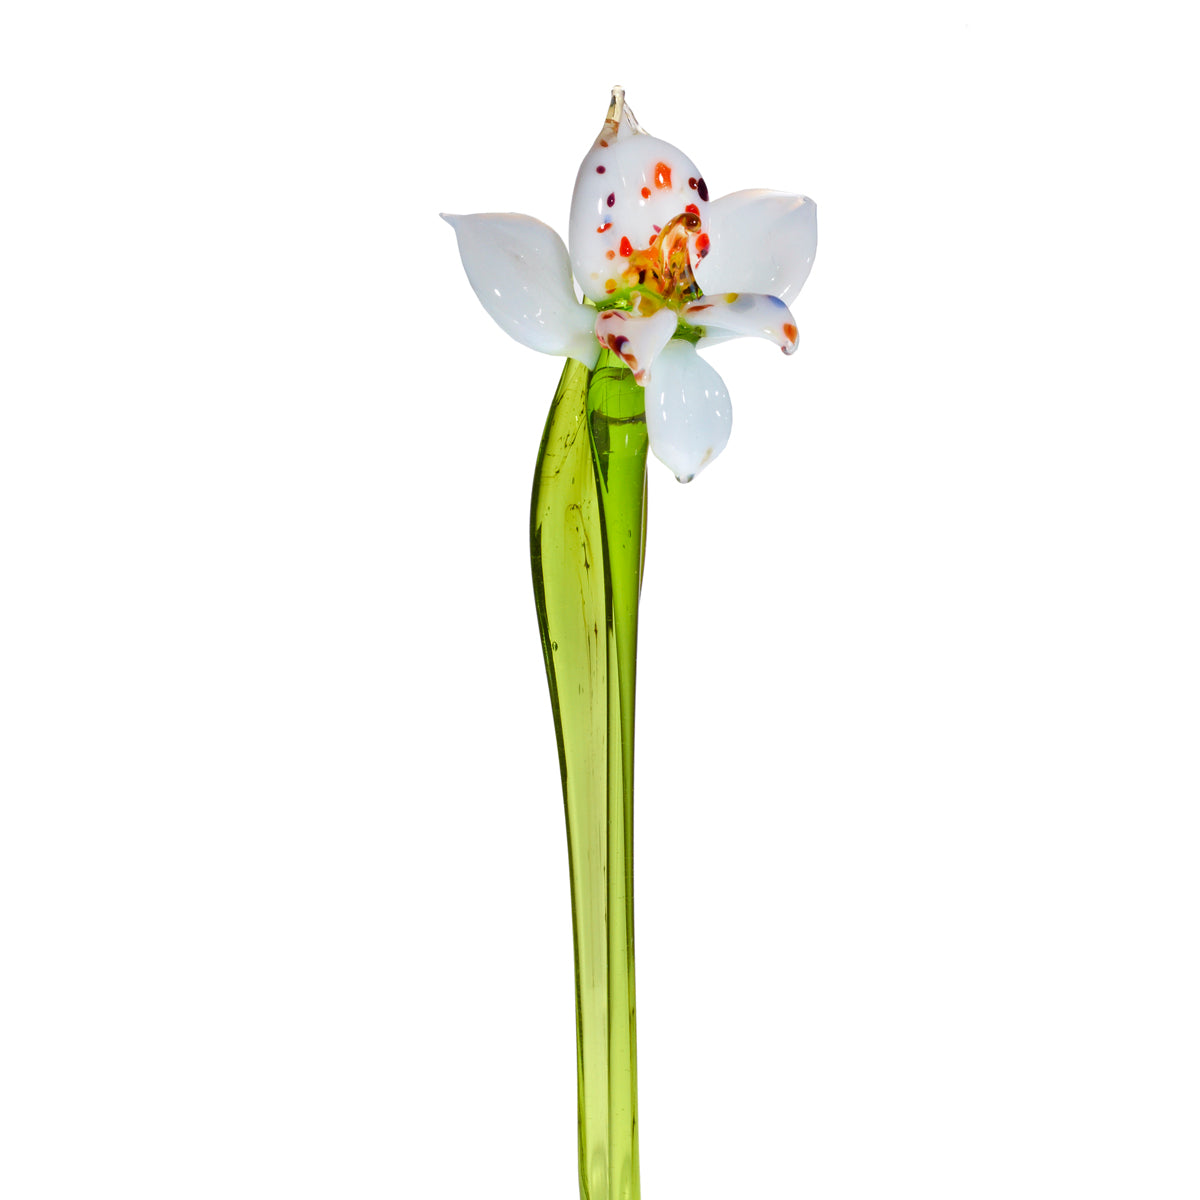 Orchidee Blumen 15-17cm Glas Blüten Figur Kunstblumen Dekoration Geschenk